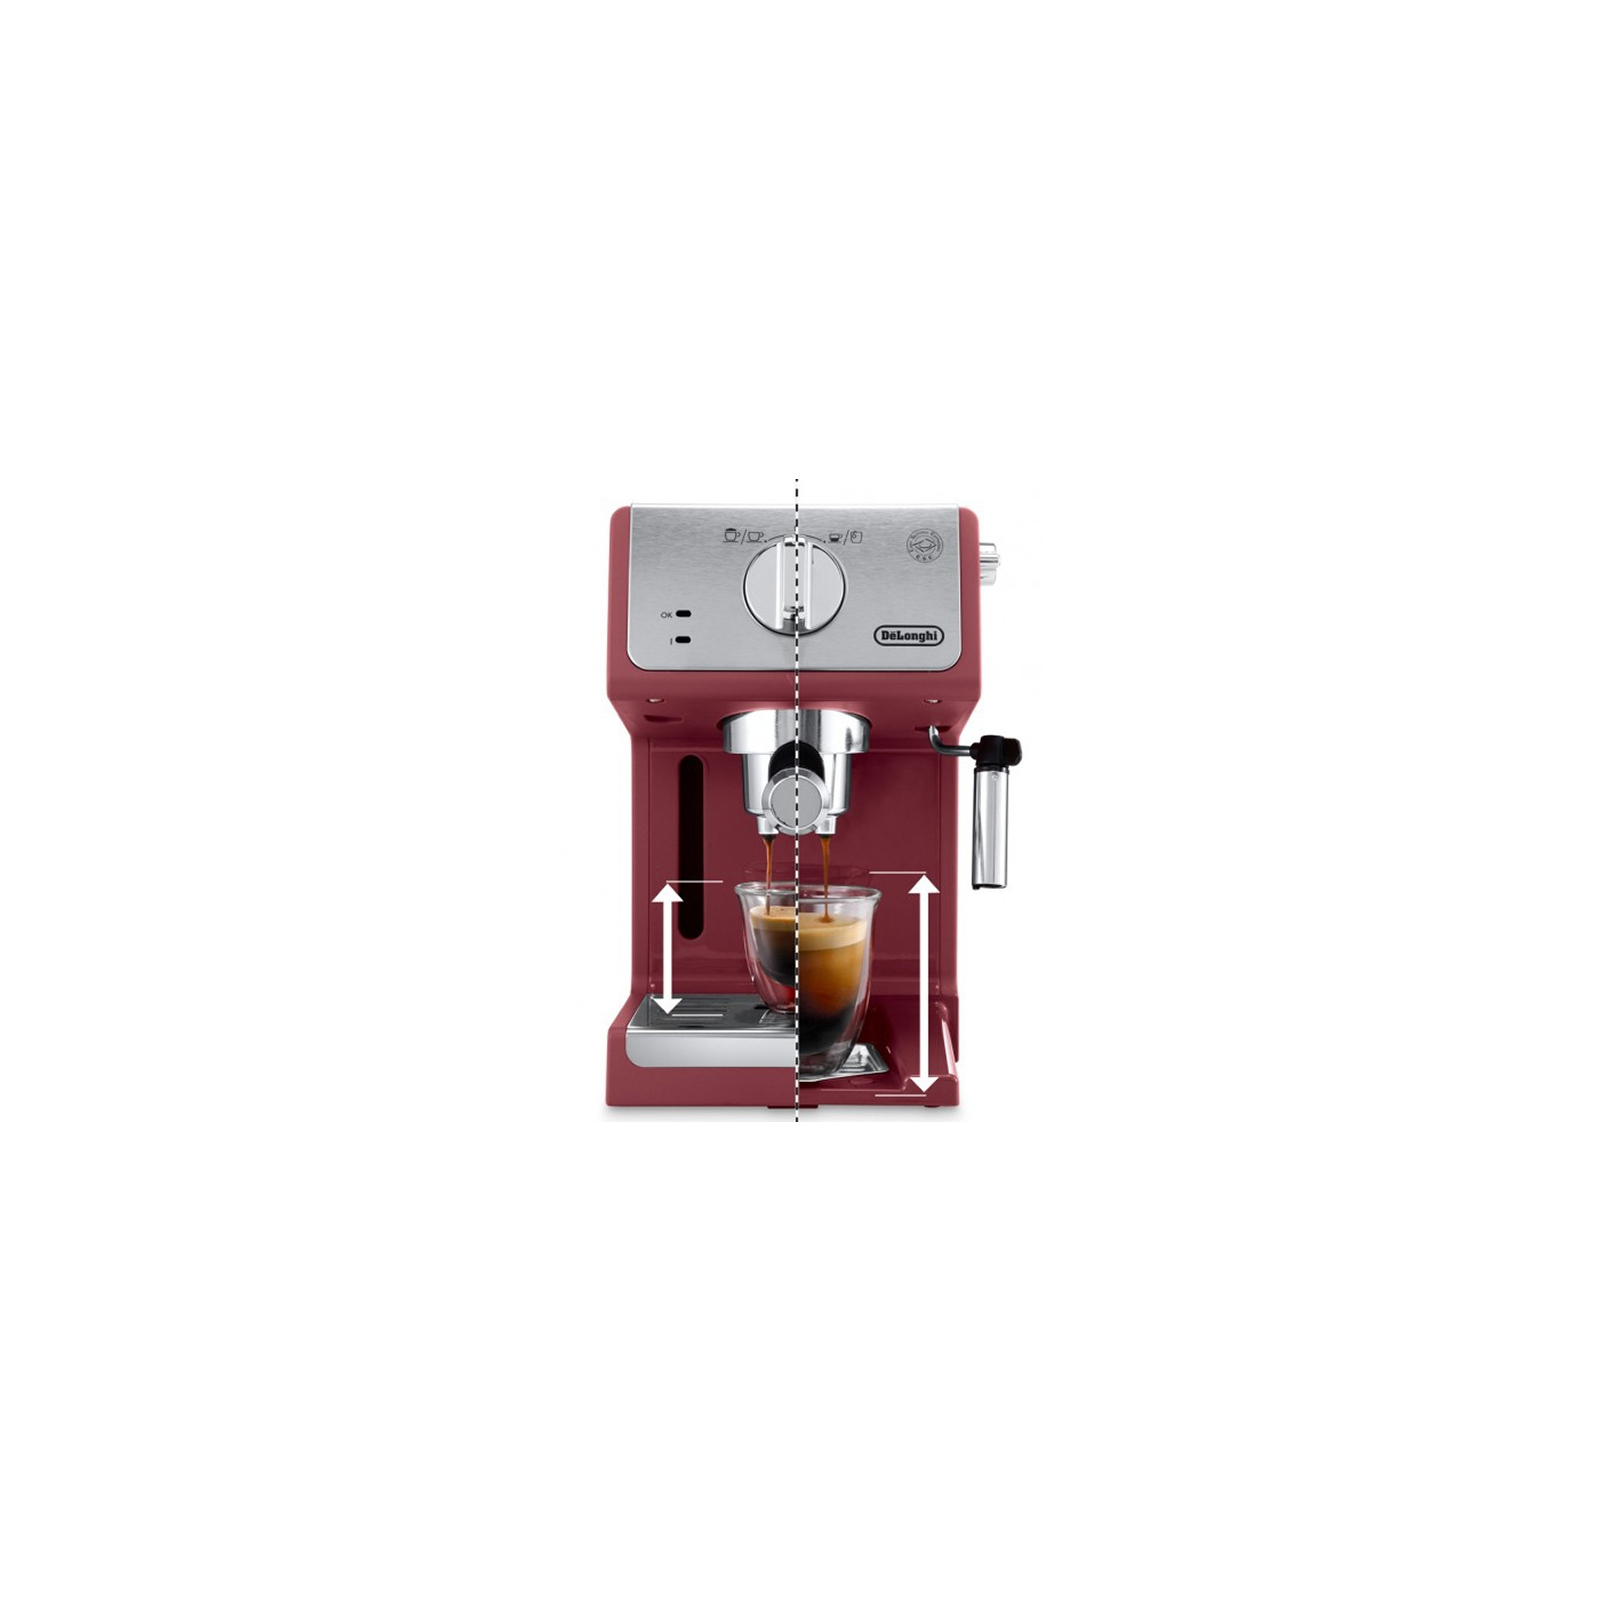 Рожковая кофеварка эспрессо DeLonghi ECP 33.21 R (ECP33.21R) изображение 3